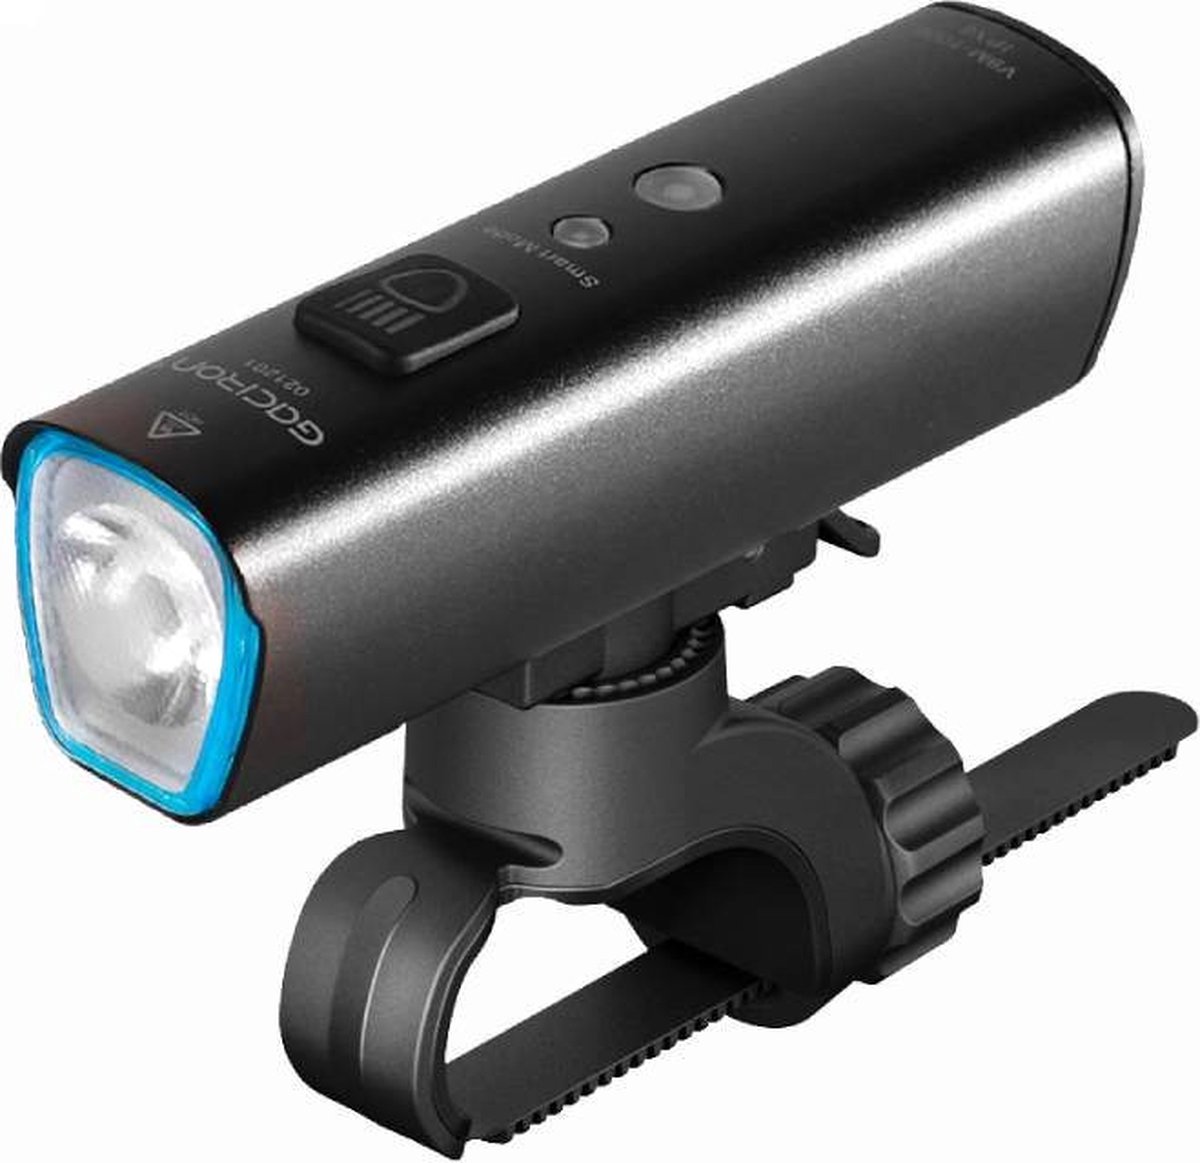 Gaciron voorlicht | 1000 lumen - USB oplaadbaar - CREE LED - IPX6 waterdicht